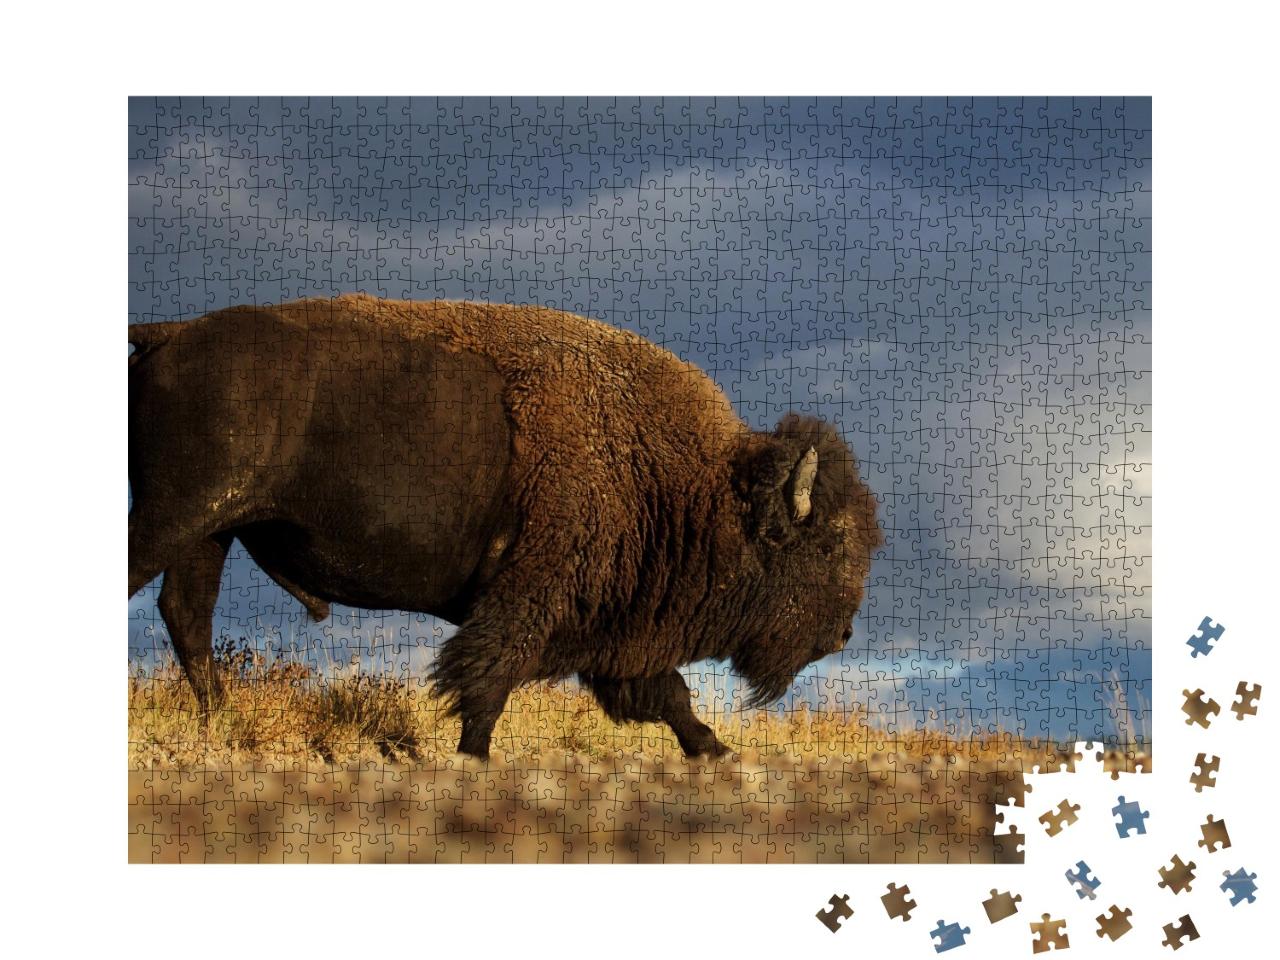 Puzzle de 1000 pièces « Bison américain alias bison sur fond de ciel dramatique de prairie, Montana »